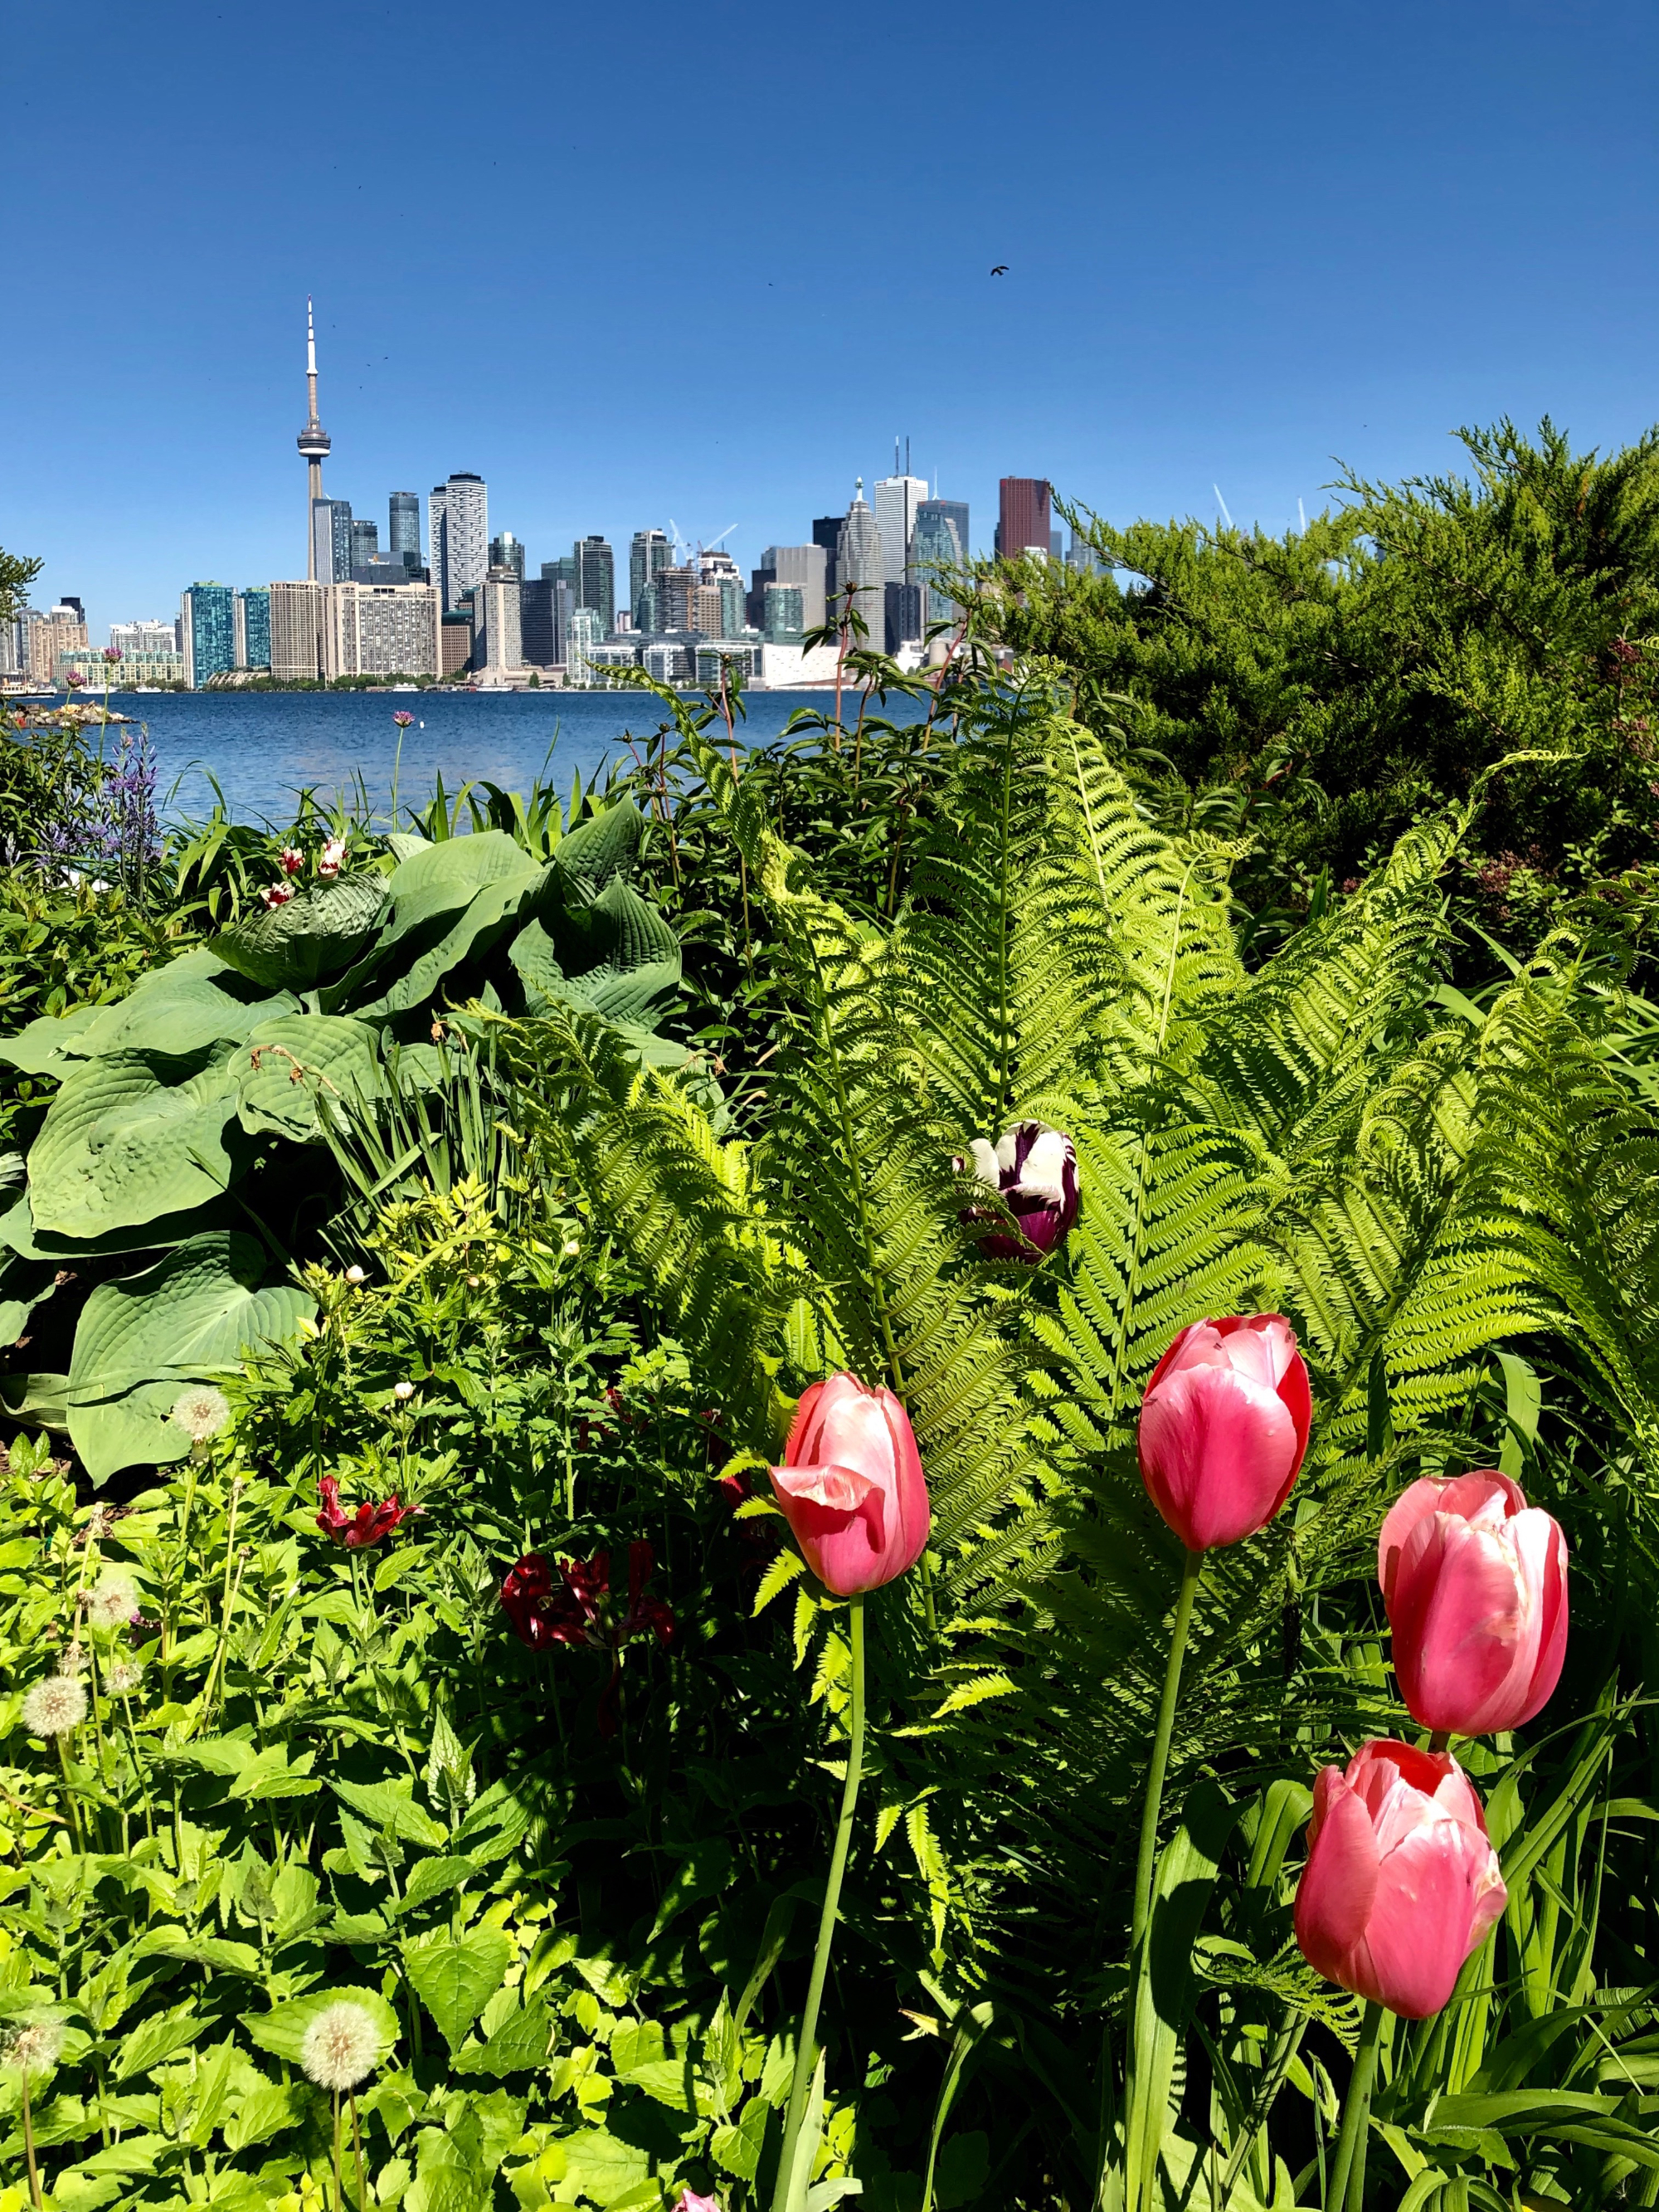 Quatre tulipes rouges sur fond de fougères.  Au loin on voit le relief des édifices de Toronto.